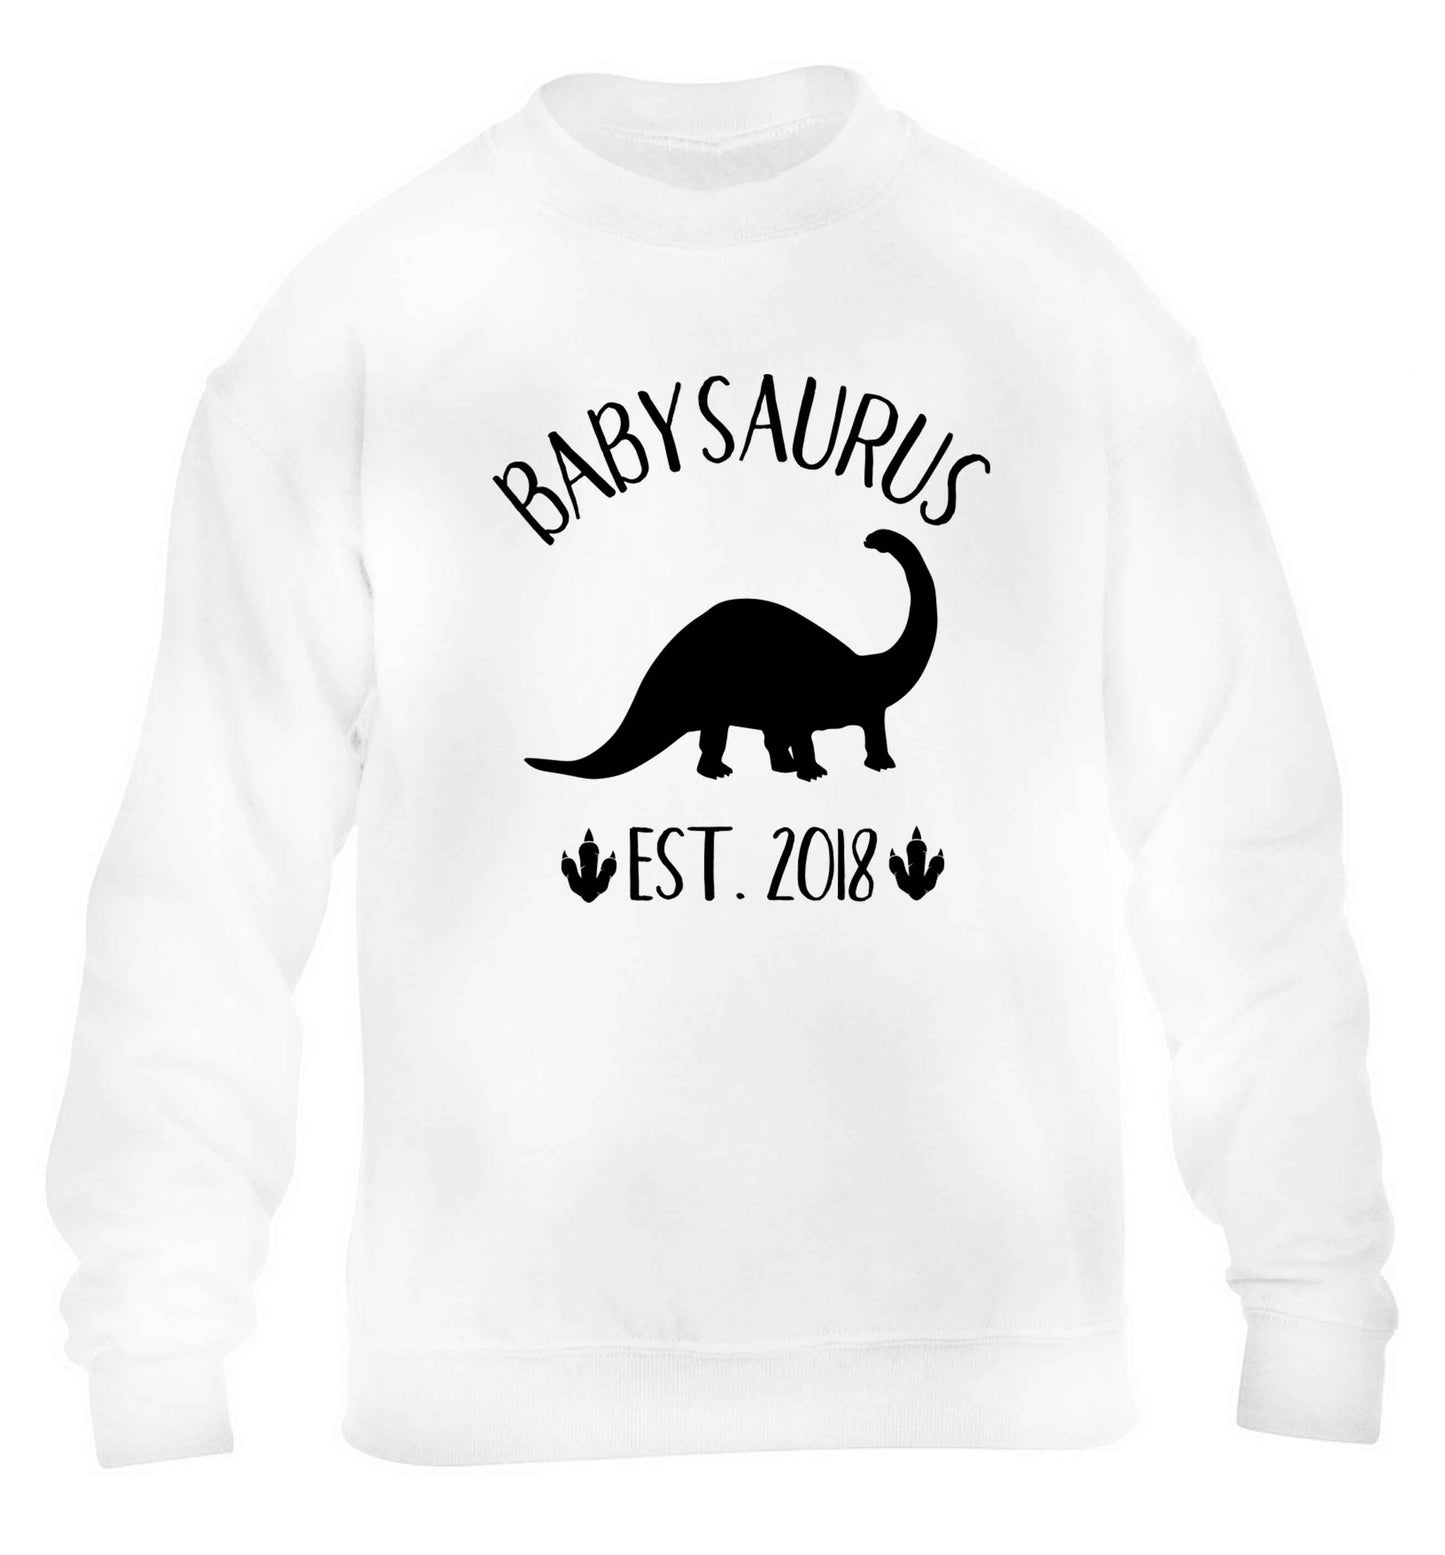 Personalised babysaurus since (custom date) children's white sweater 12-13 Years